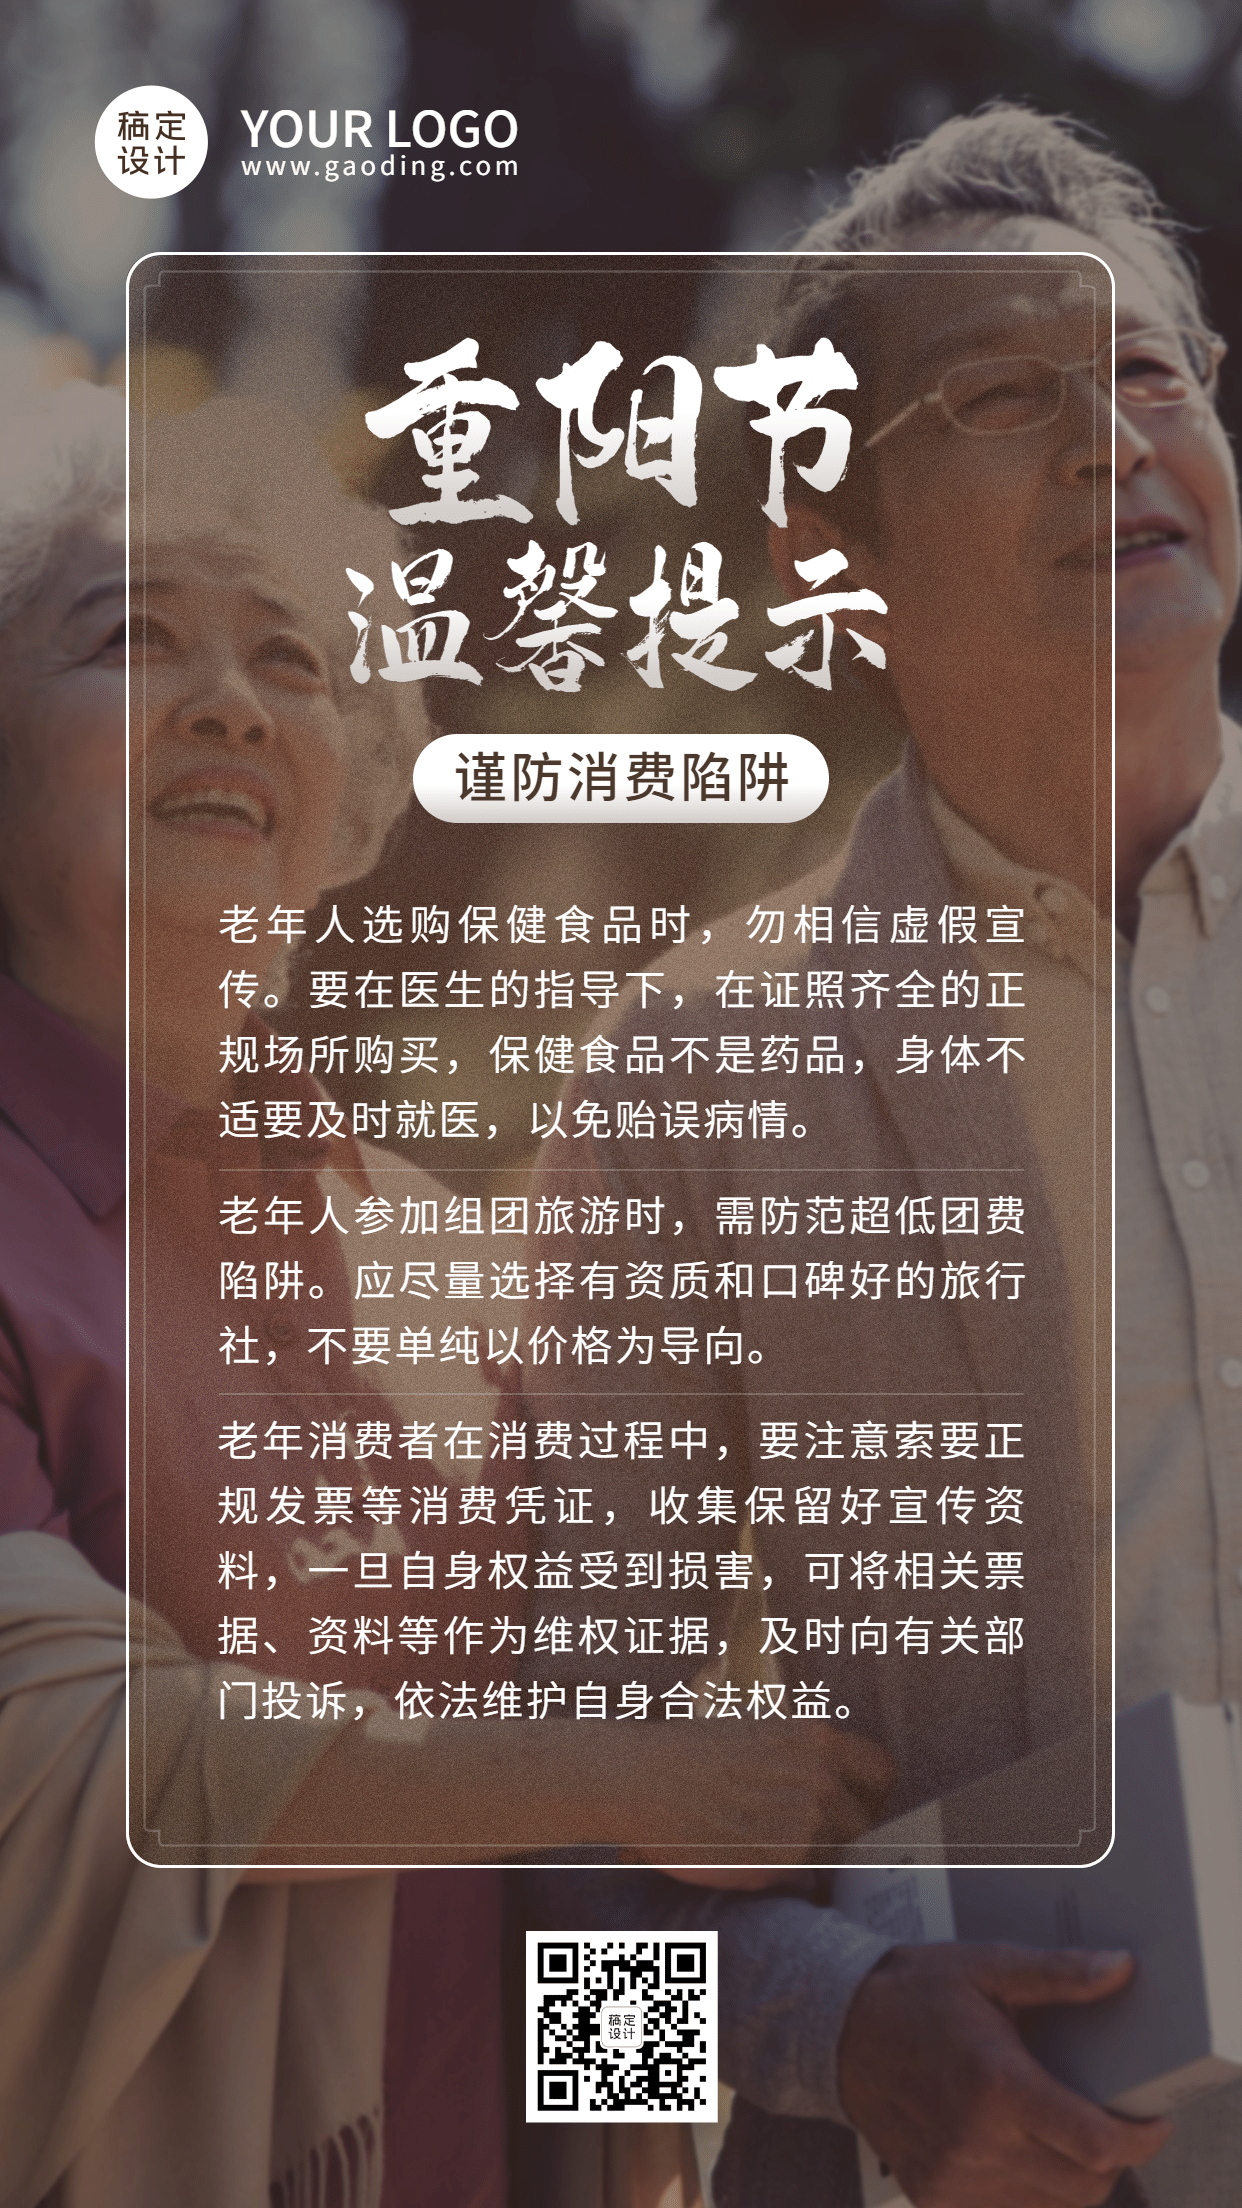 重阳节老人消费警示提示实景手机海报